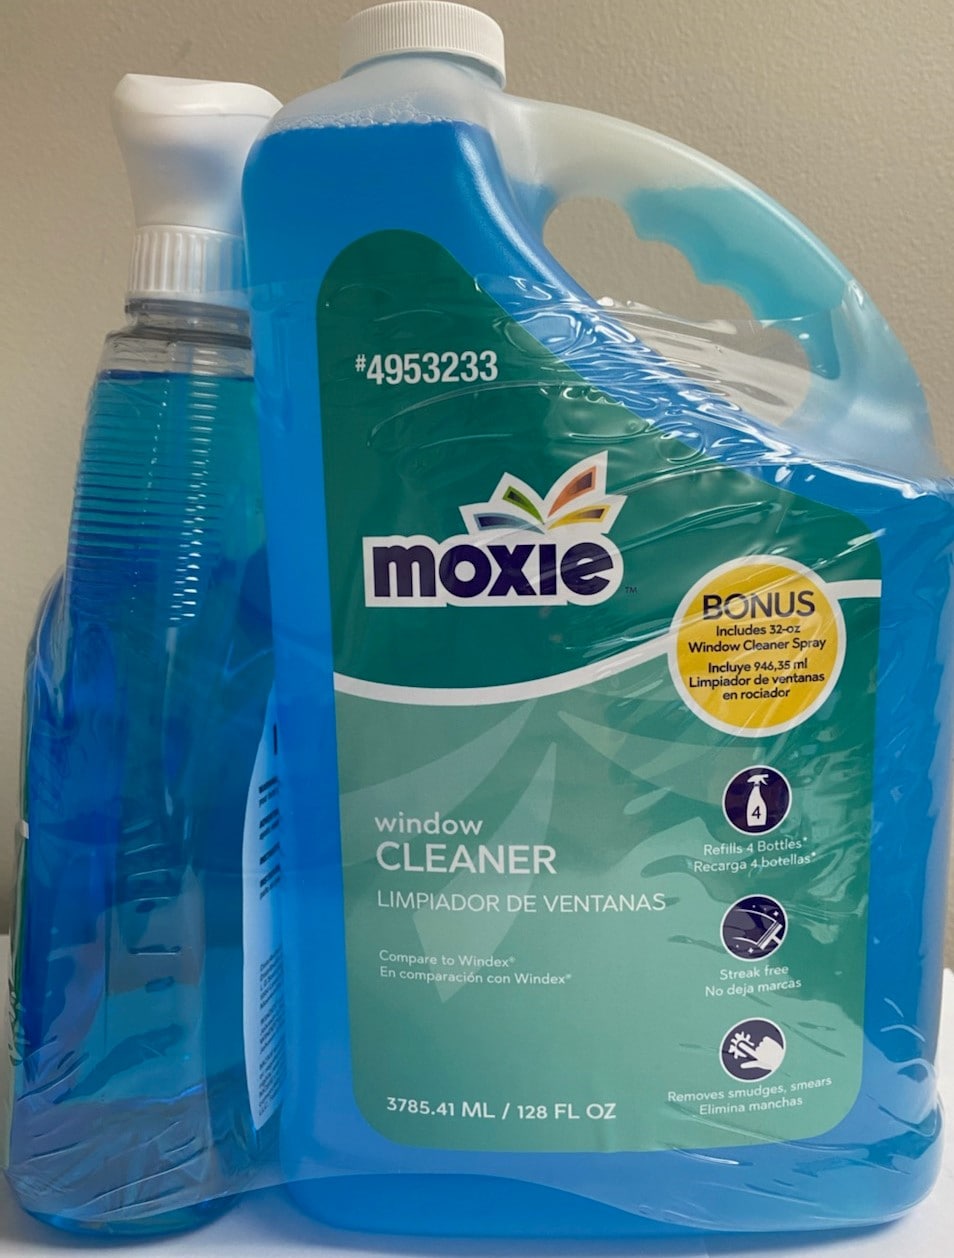 Milex 3 in 1 Spray Window Cleaner